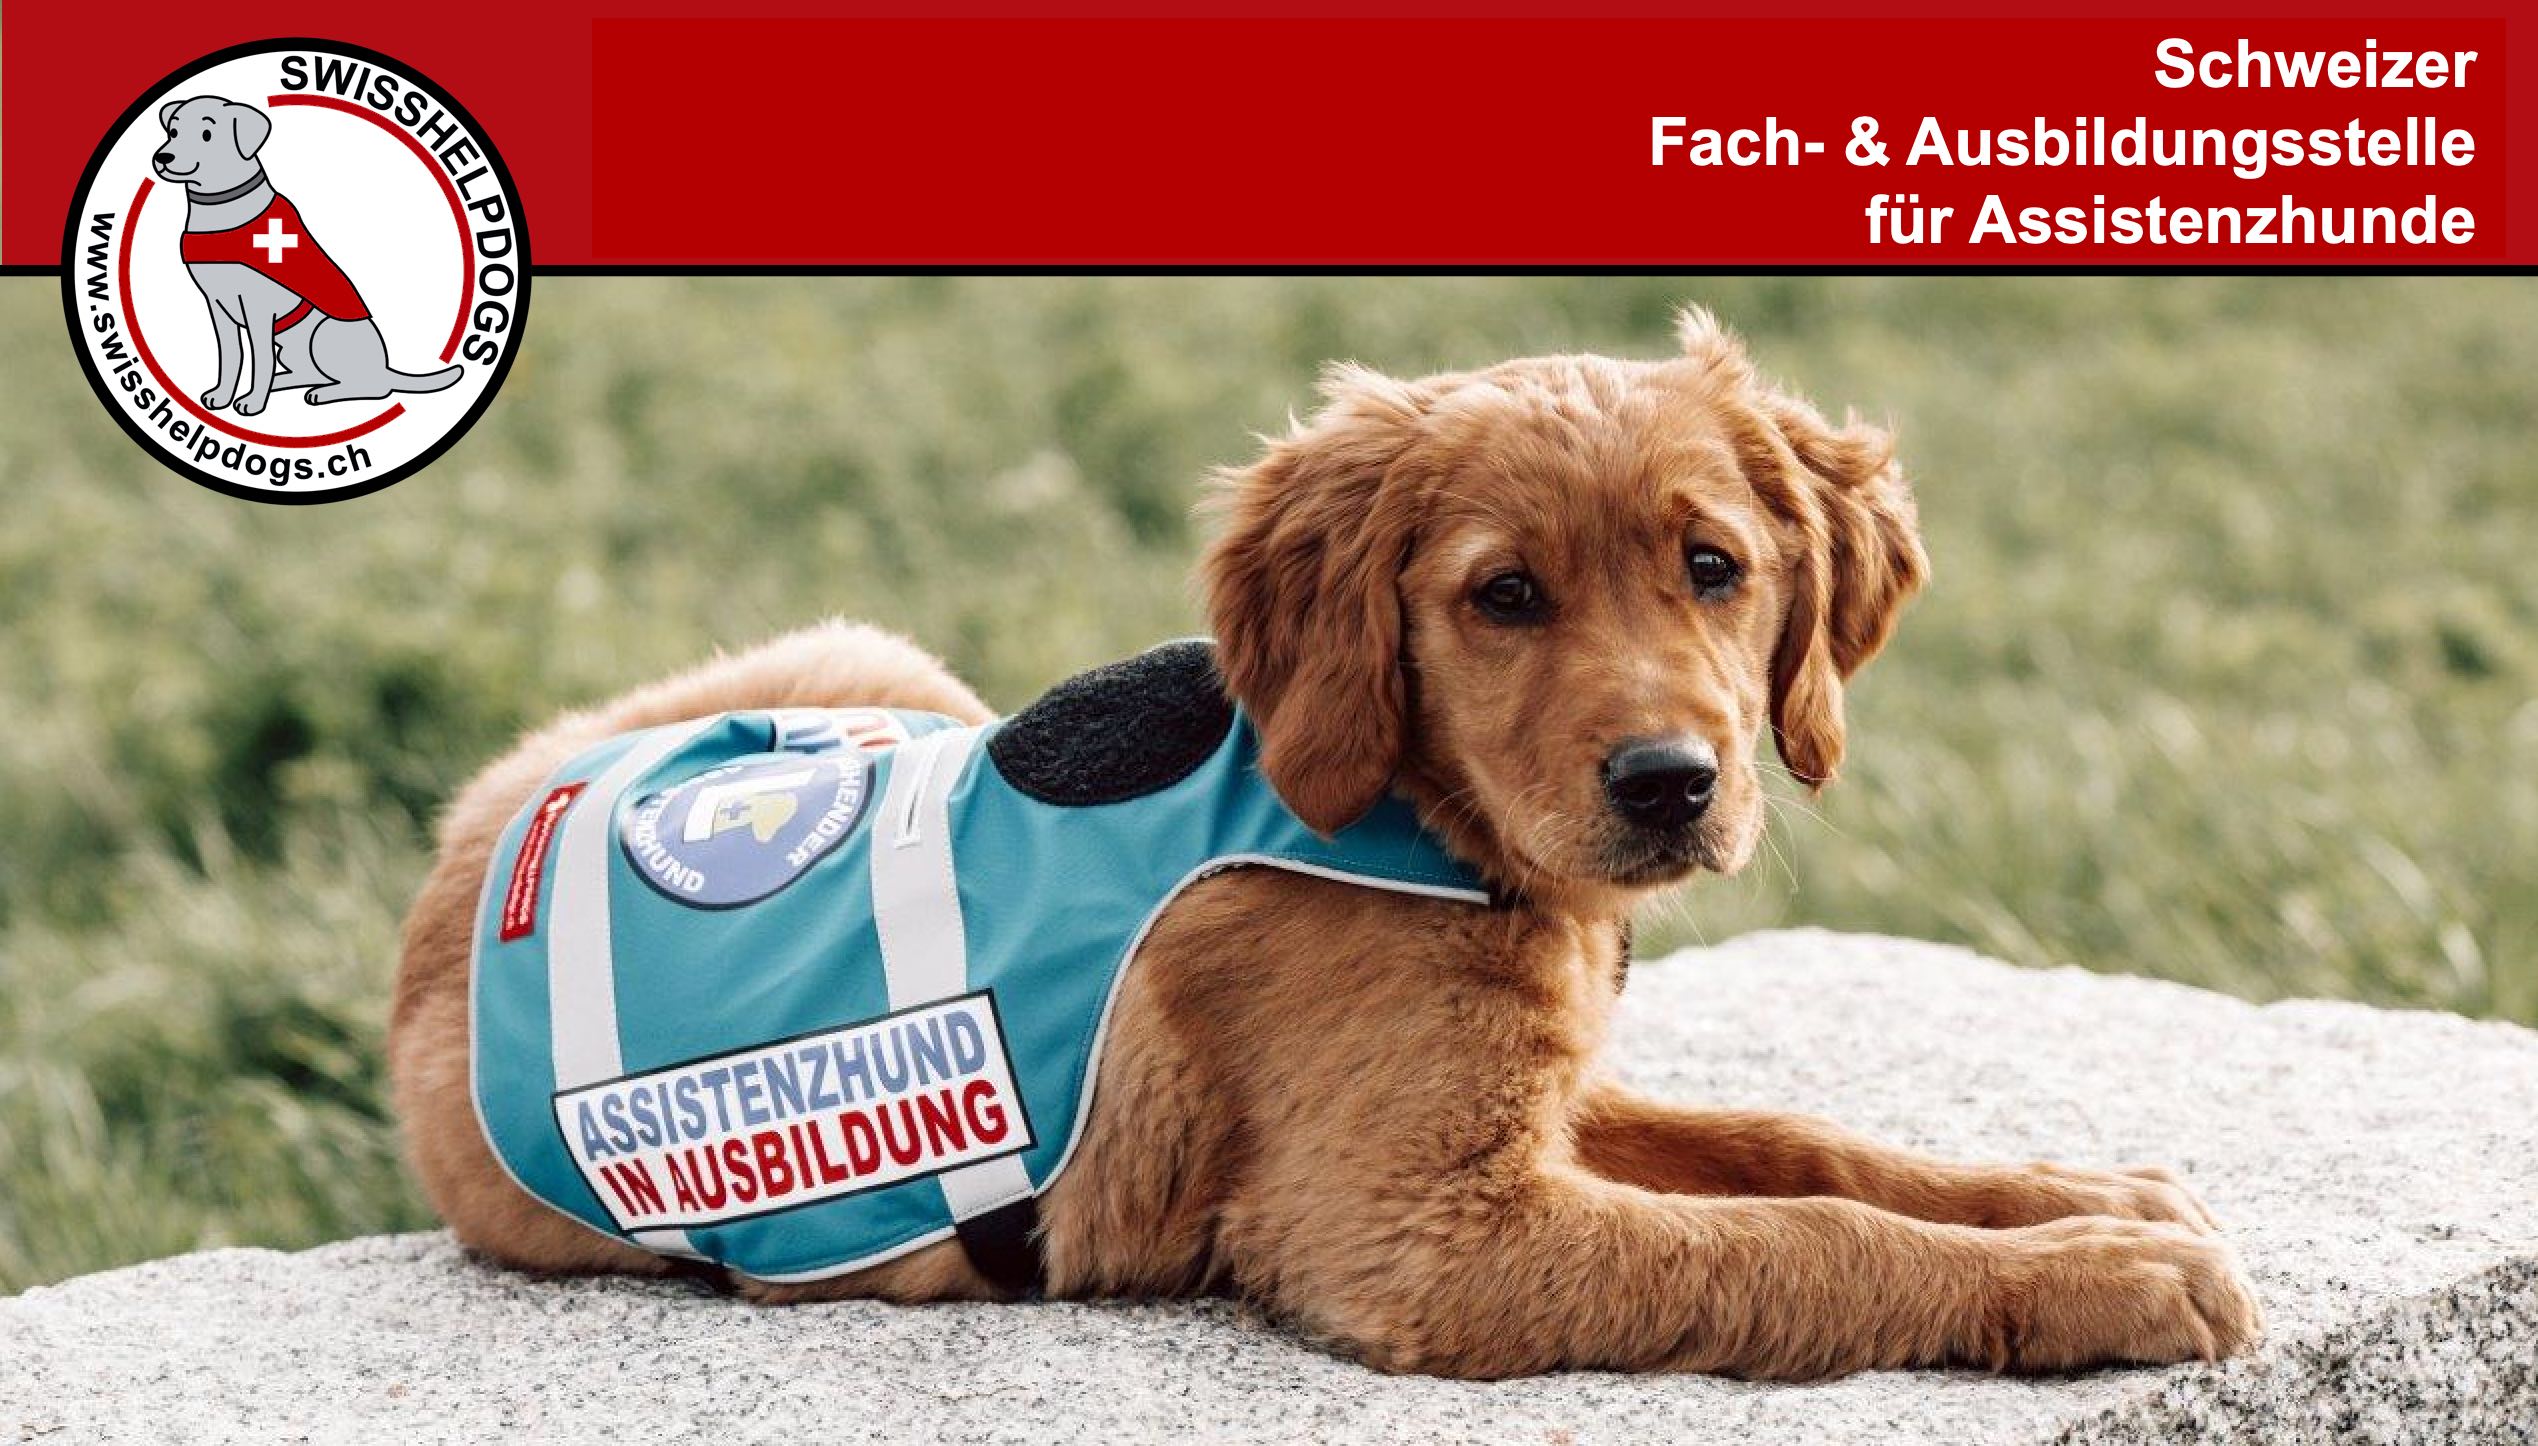 (c) Swisshelpdogs.ch